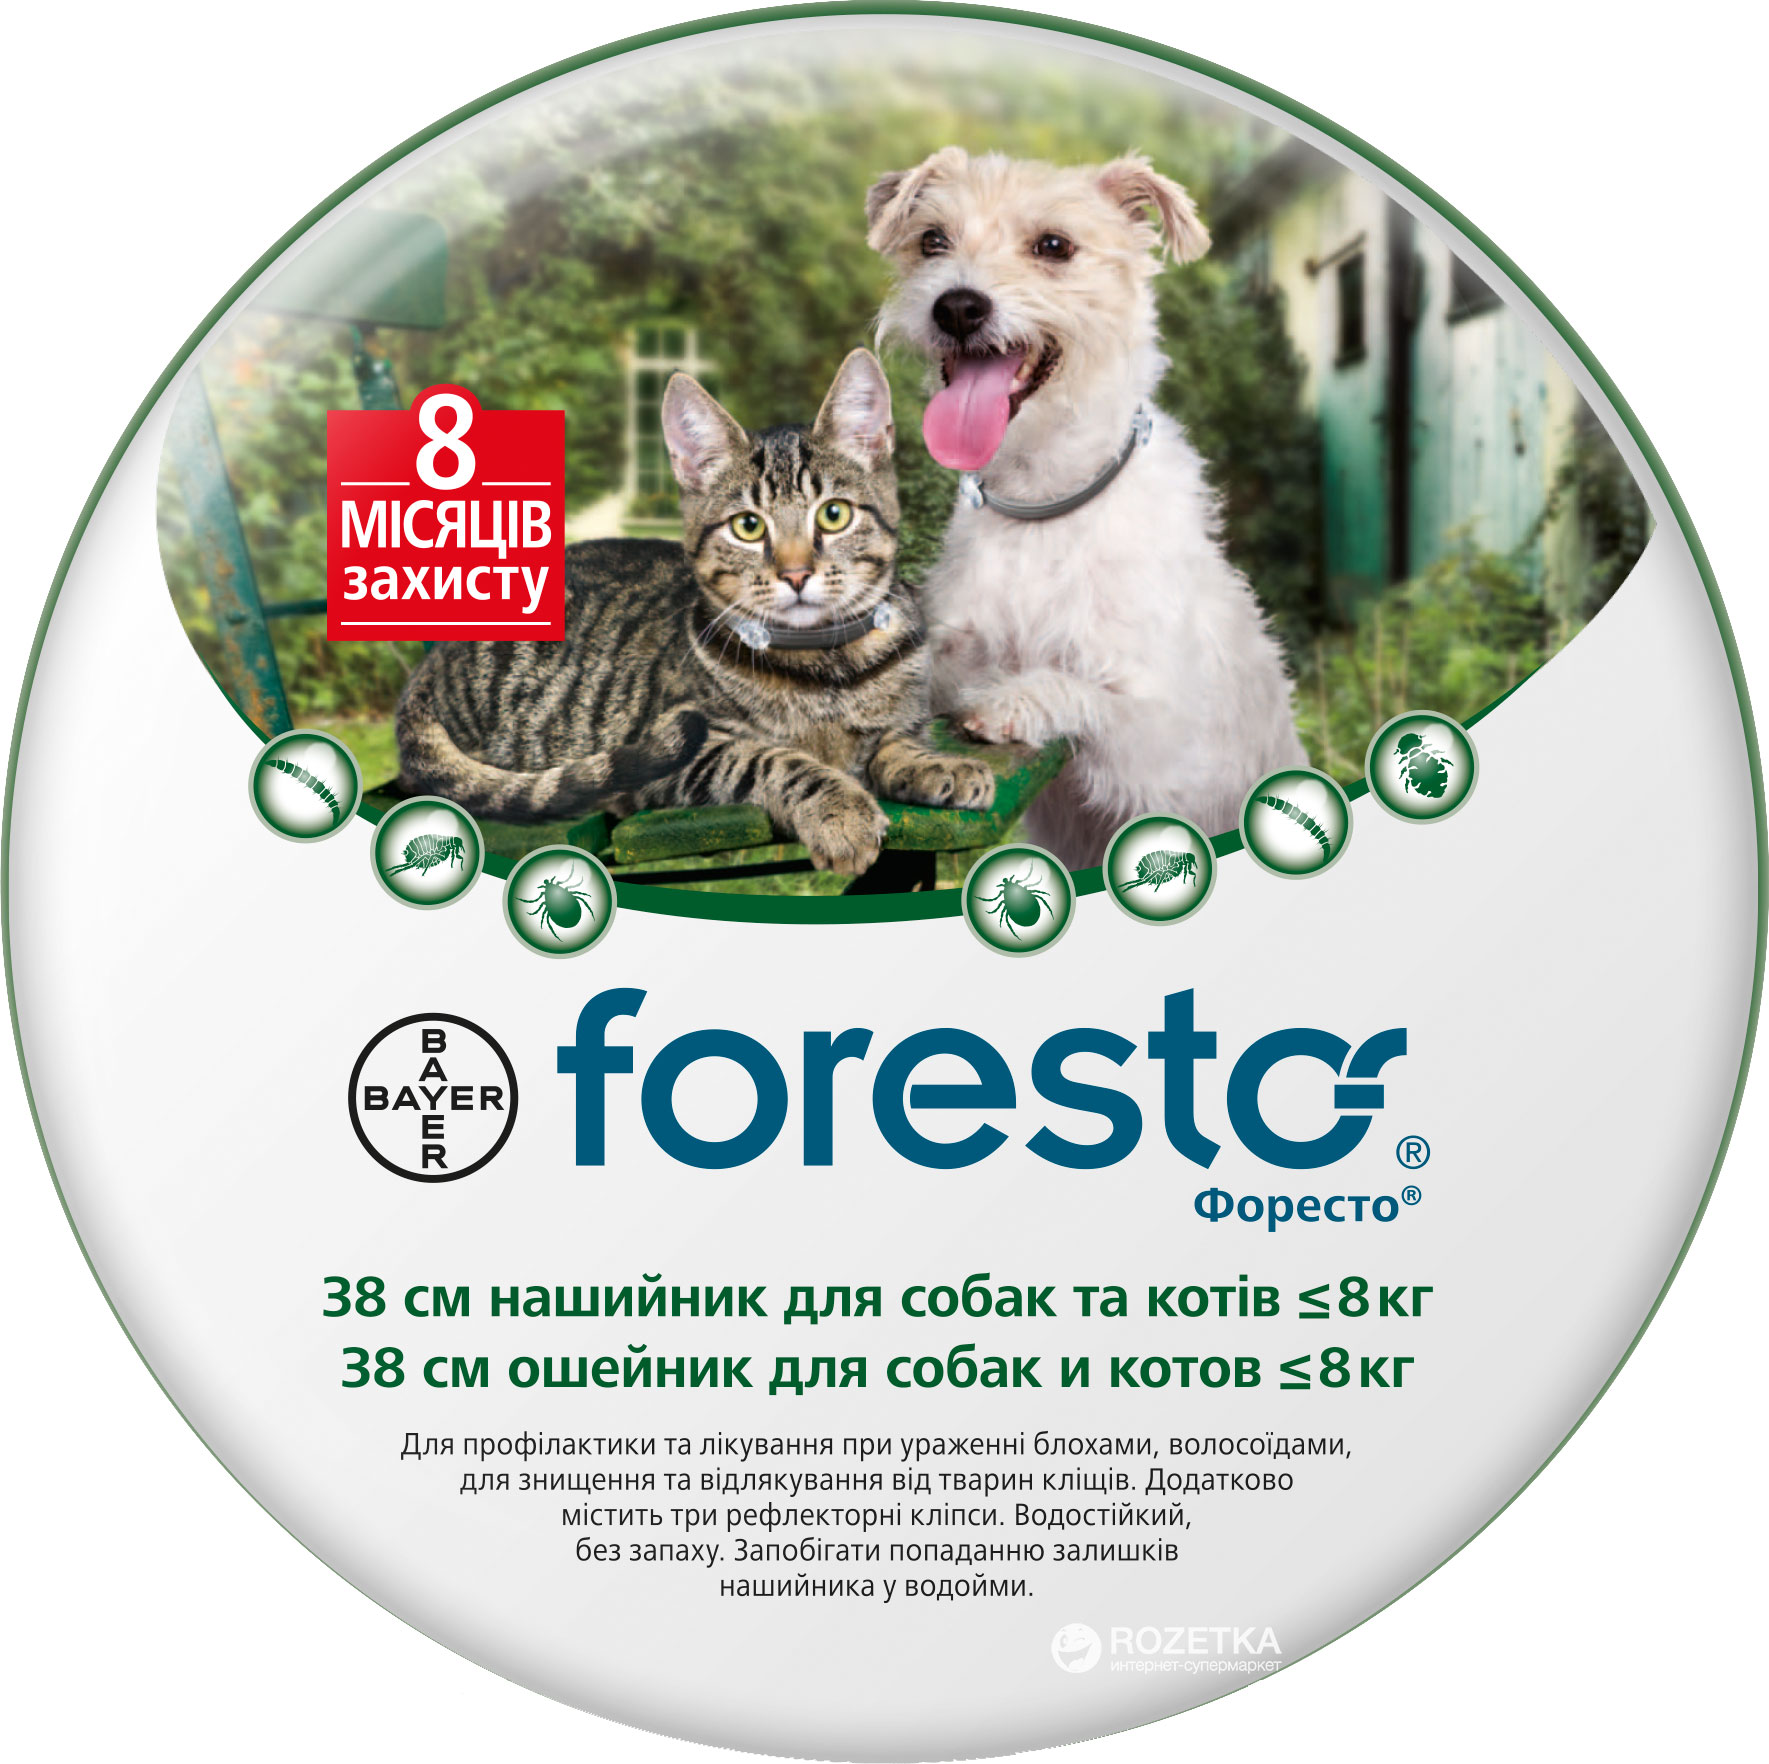 Bayer Foresto - ошейник для кошек и собак против блох и клещей Байер Форесто 38 см